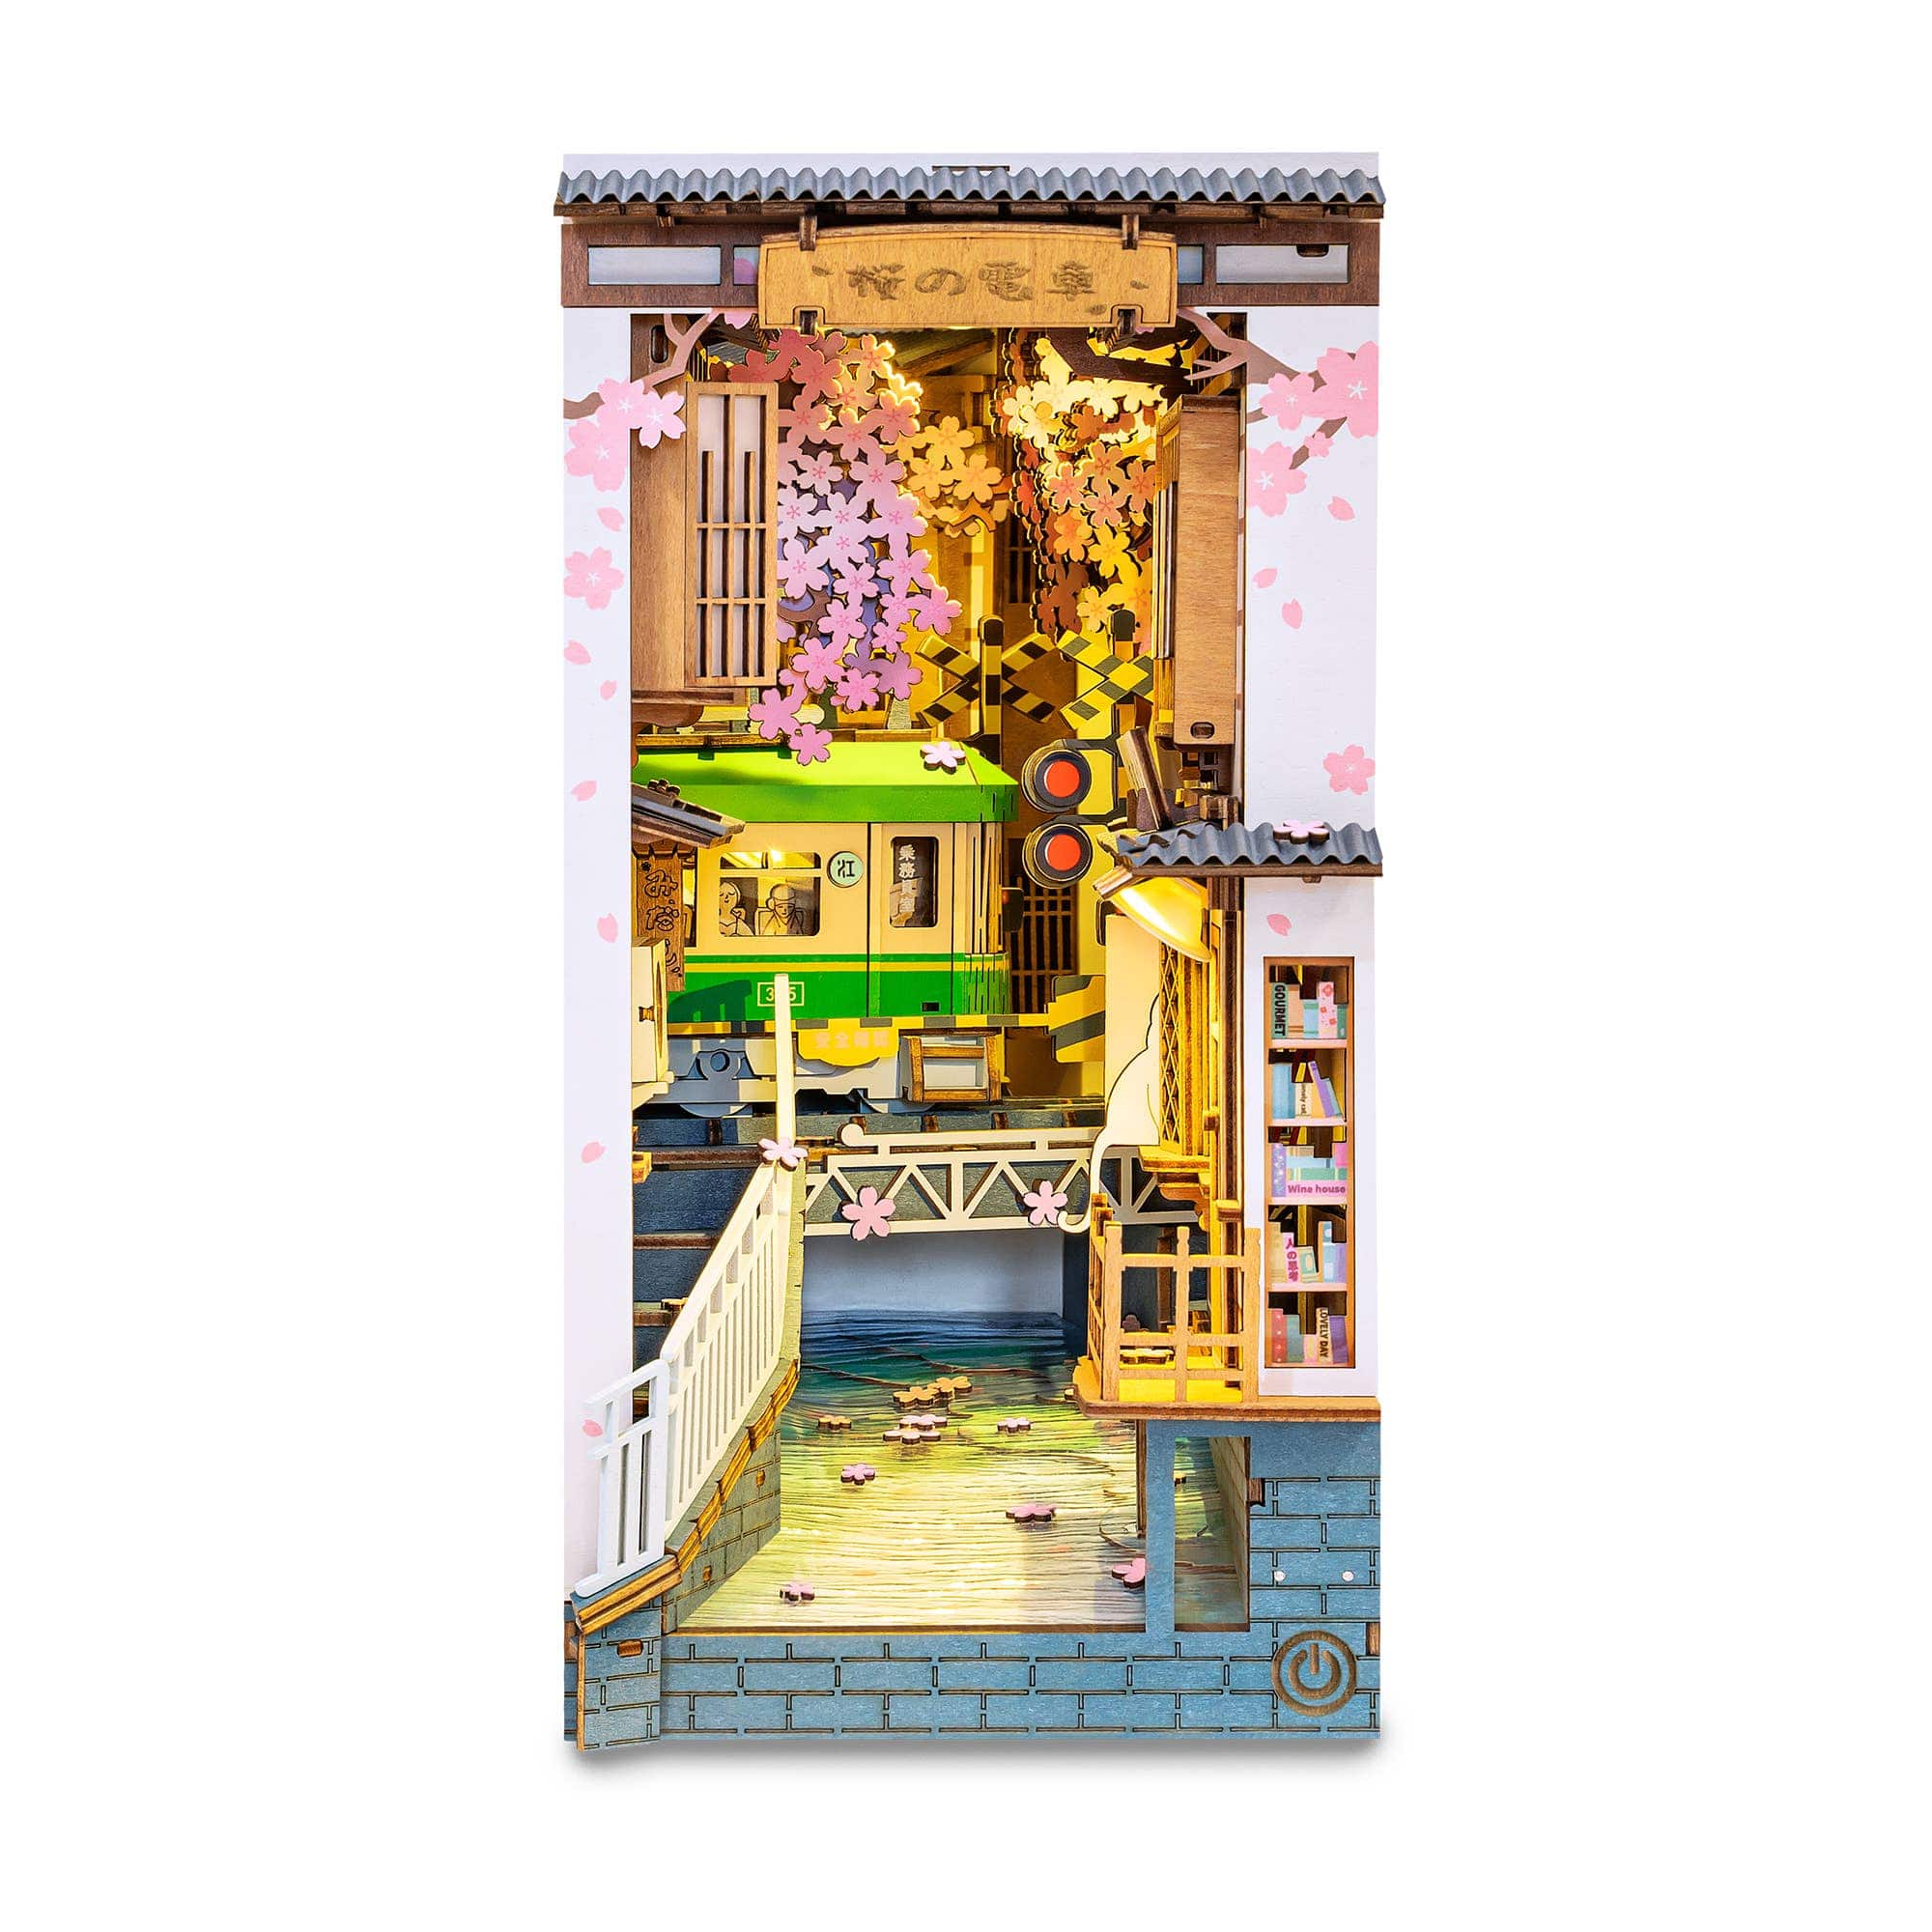 Hands Craft TGB01, DIY Miniature House Book Nook Kit: Sakura Densya Kawaii Gifts 850026738841